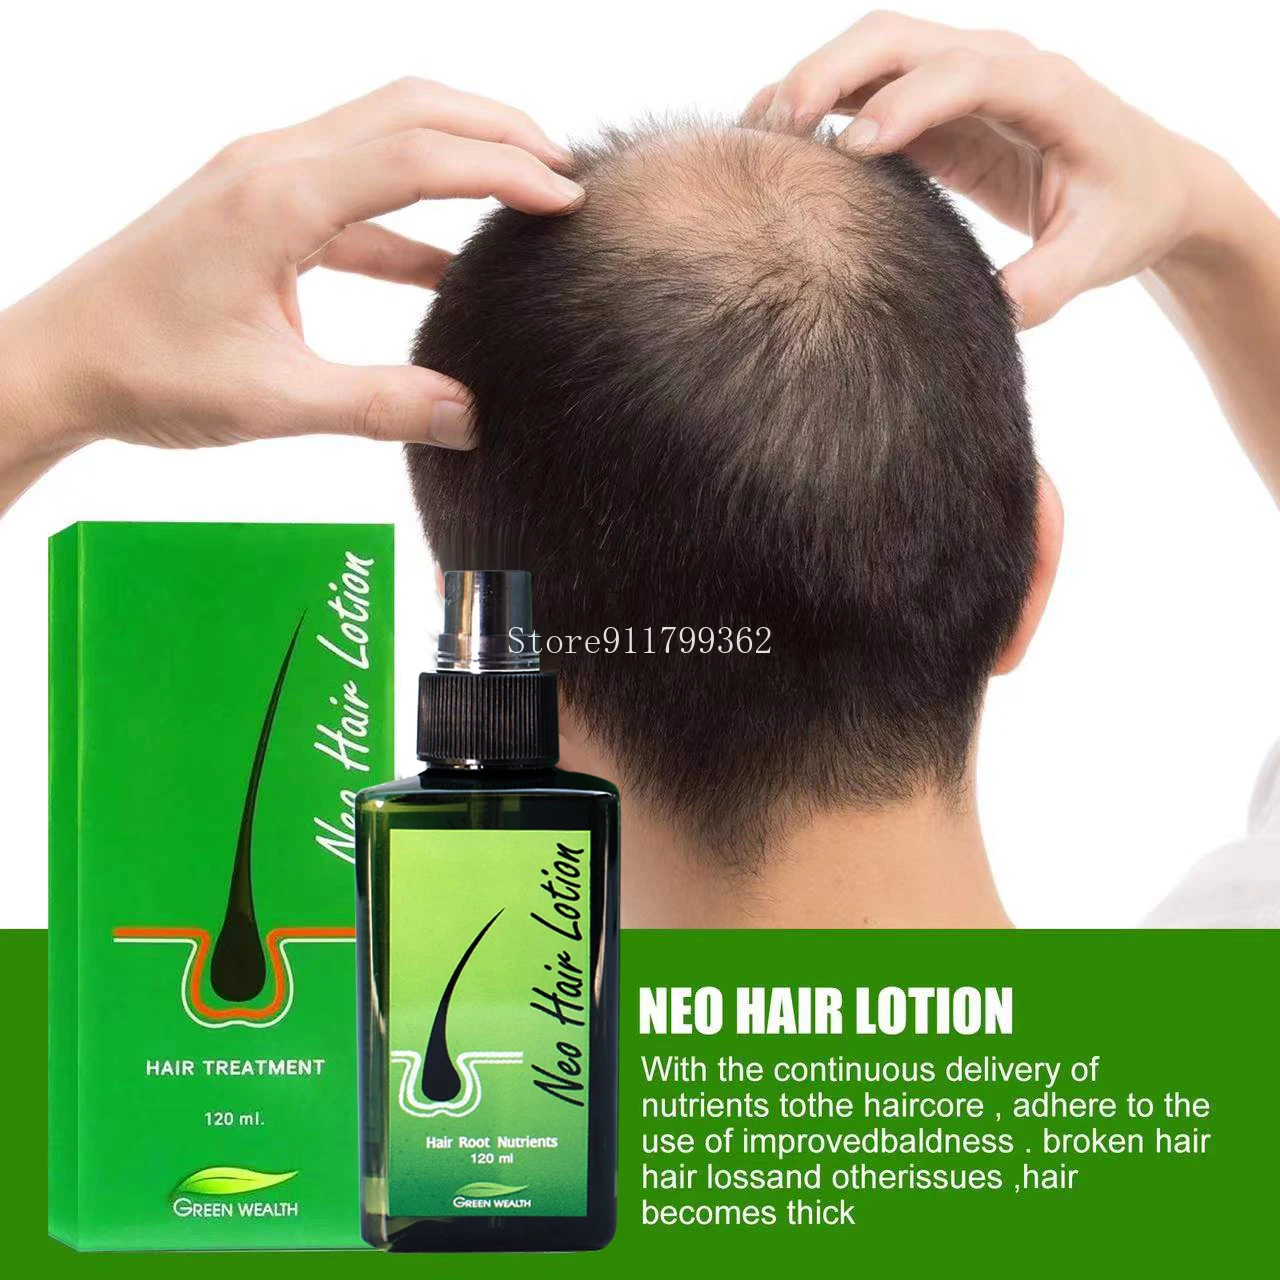 Hair Loss Treatment Growth Hair for Men Women1pcs120ml Neo Hair Lotion Hair  Growth Serum Essence Oil _ - AliExpress Mobile